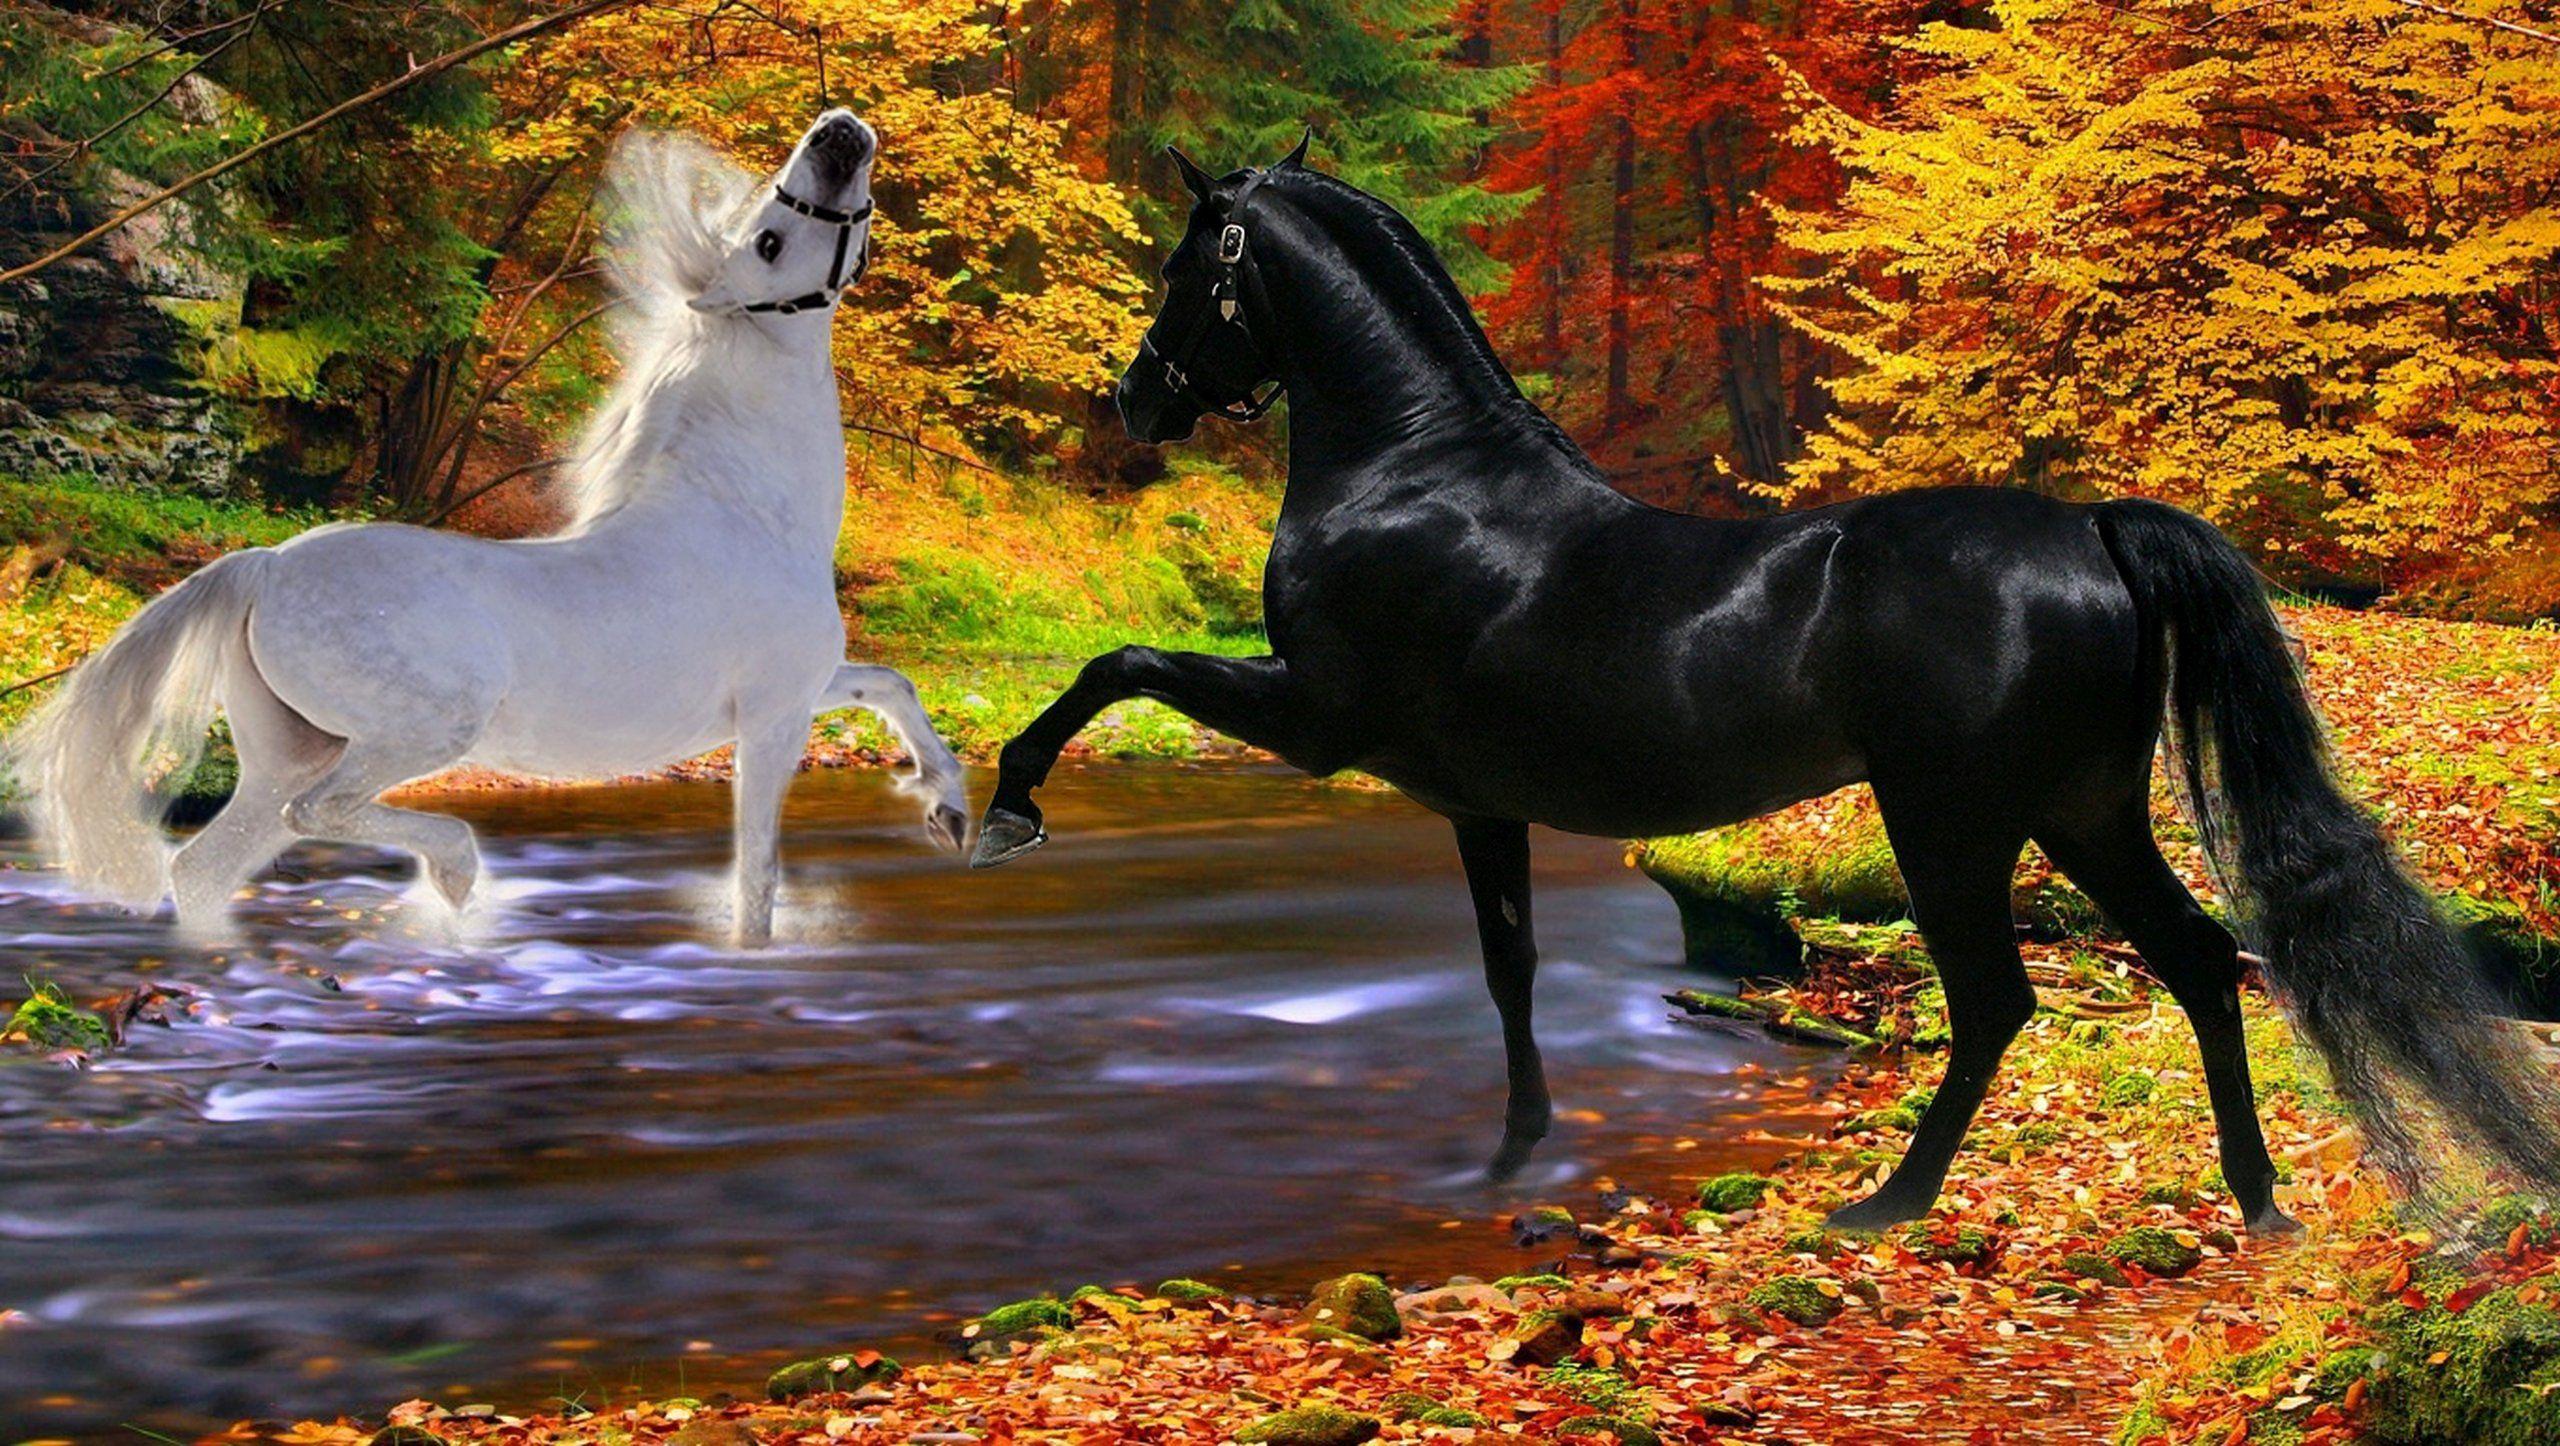 Обои на рабочий лошадь. Красивые лошади. Лошади на природе. Лошадь в осеннем лесу. Priroda loshat.